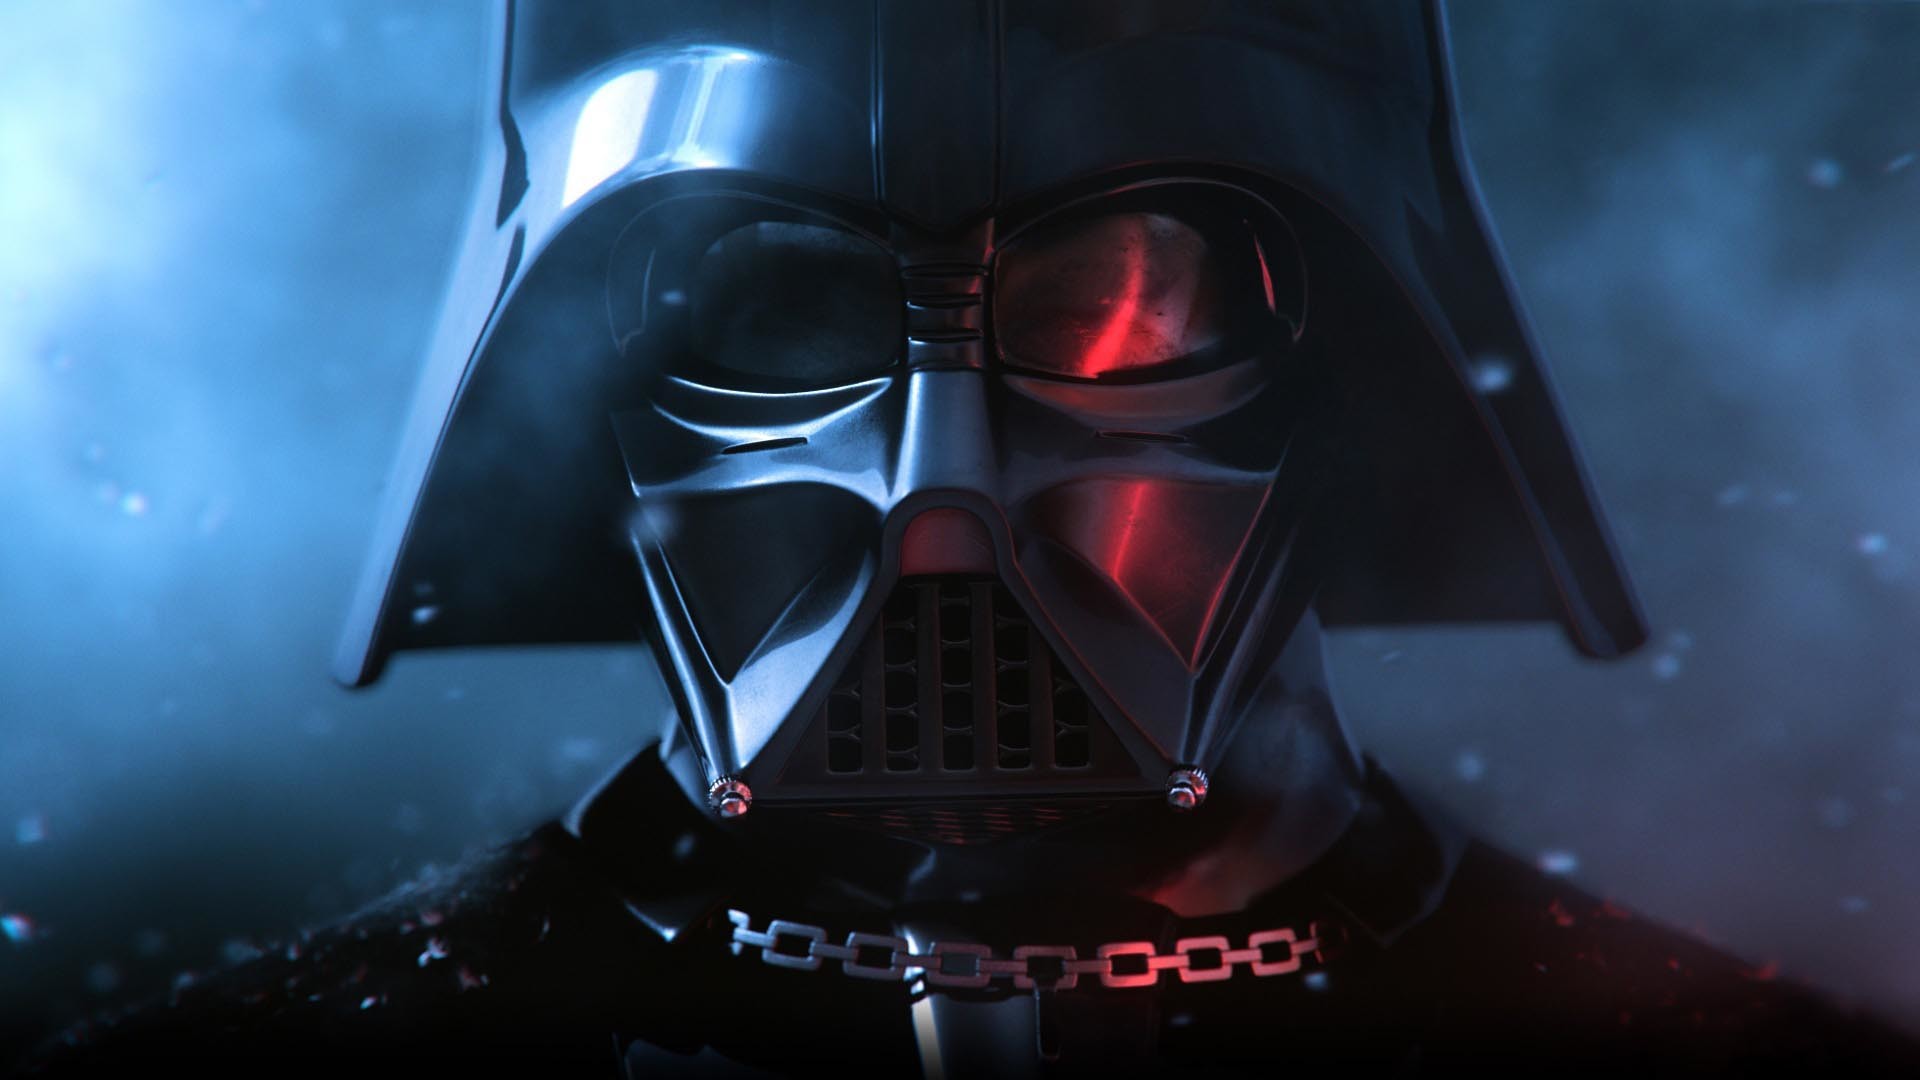 1920x1080 Star Wars – Darth Vader HD Wallpaper. Â« Â»